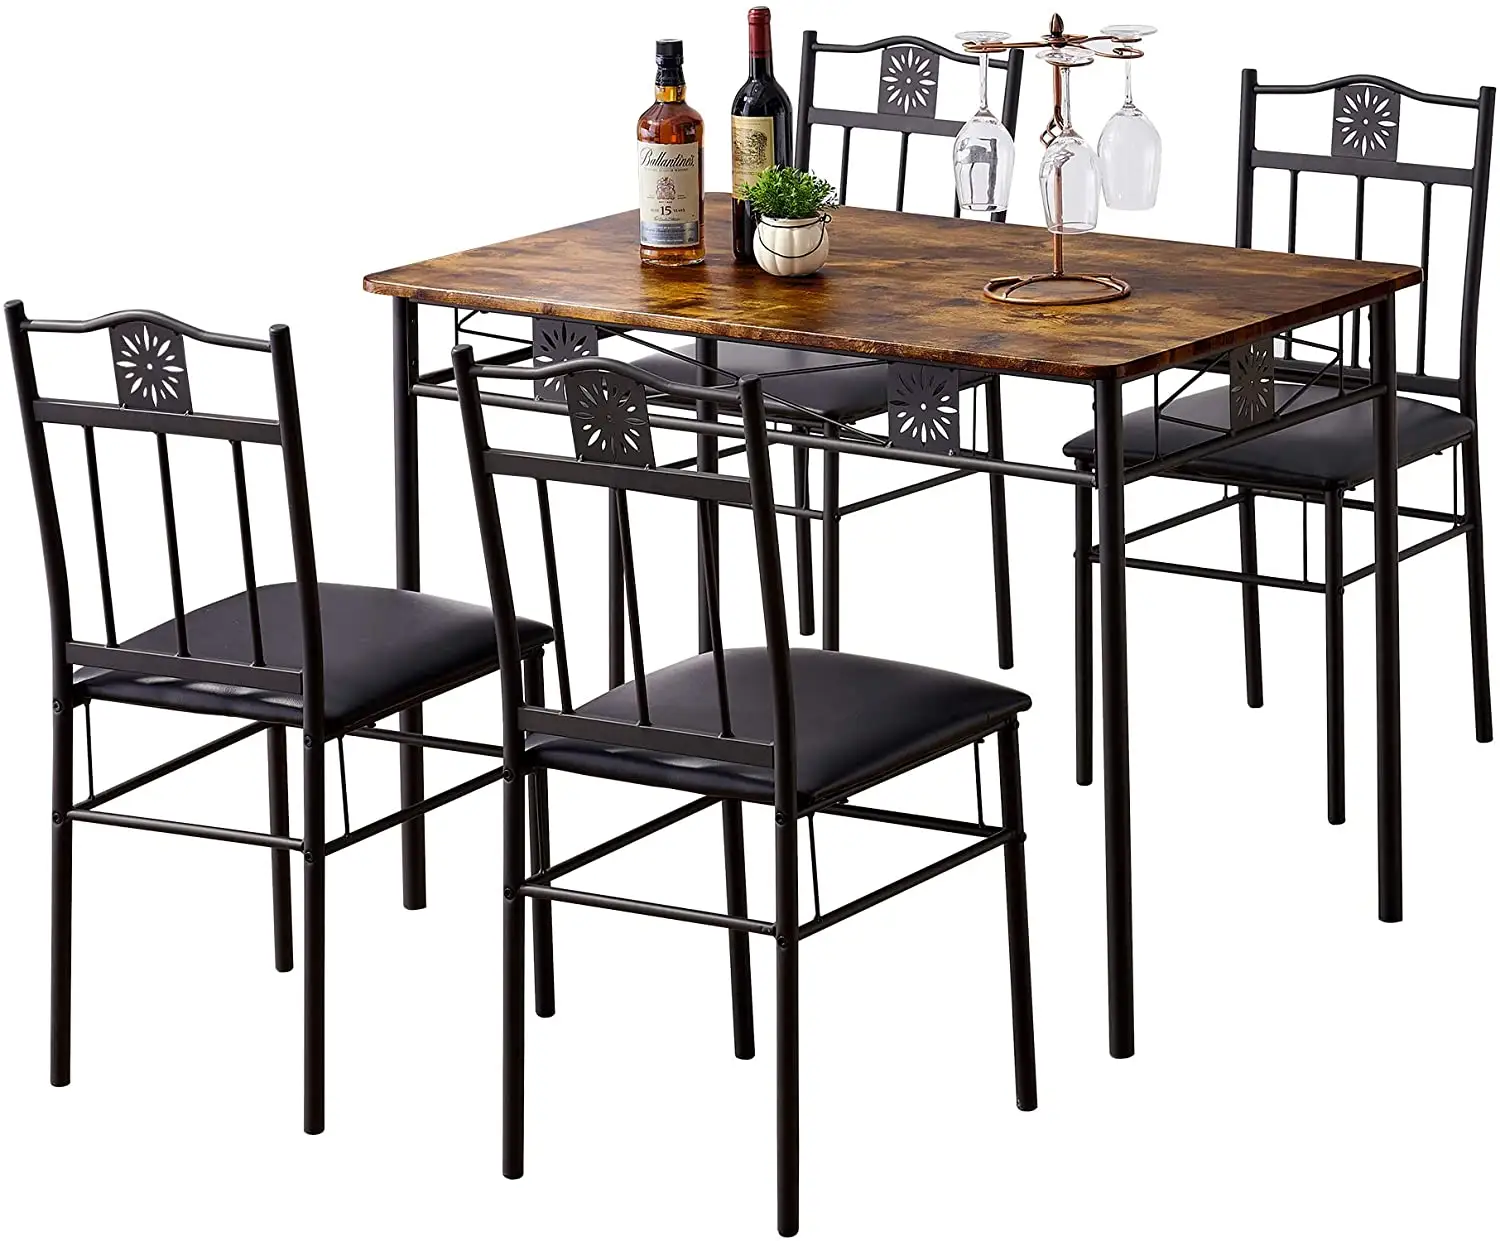 Conjunto de mesa de jantar industrial, conjunto barato de madeira industrial moderna de 4 lugares sala de jantar metal restaurante móveis mesa de jantar e cadeiras